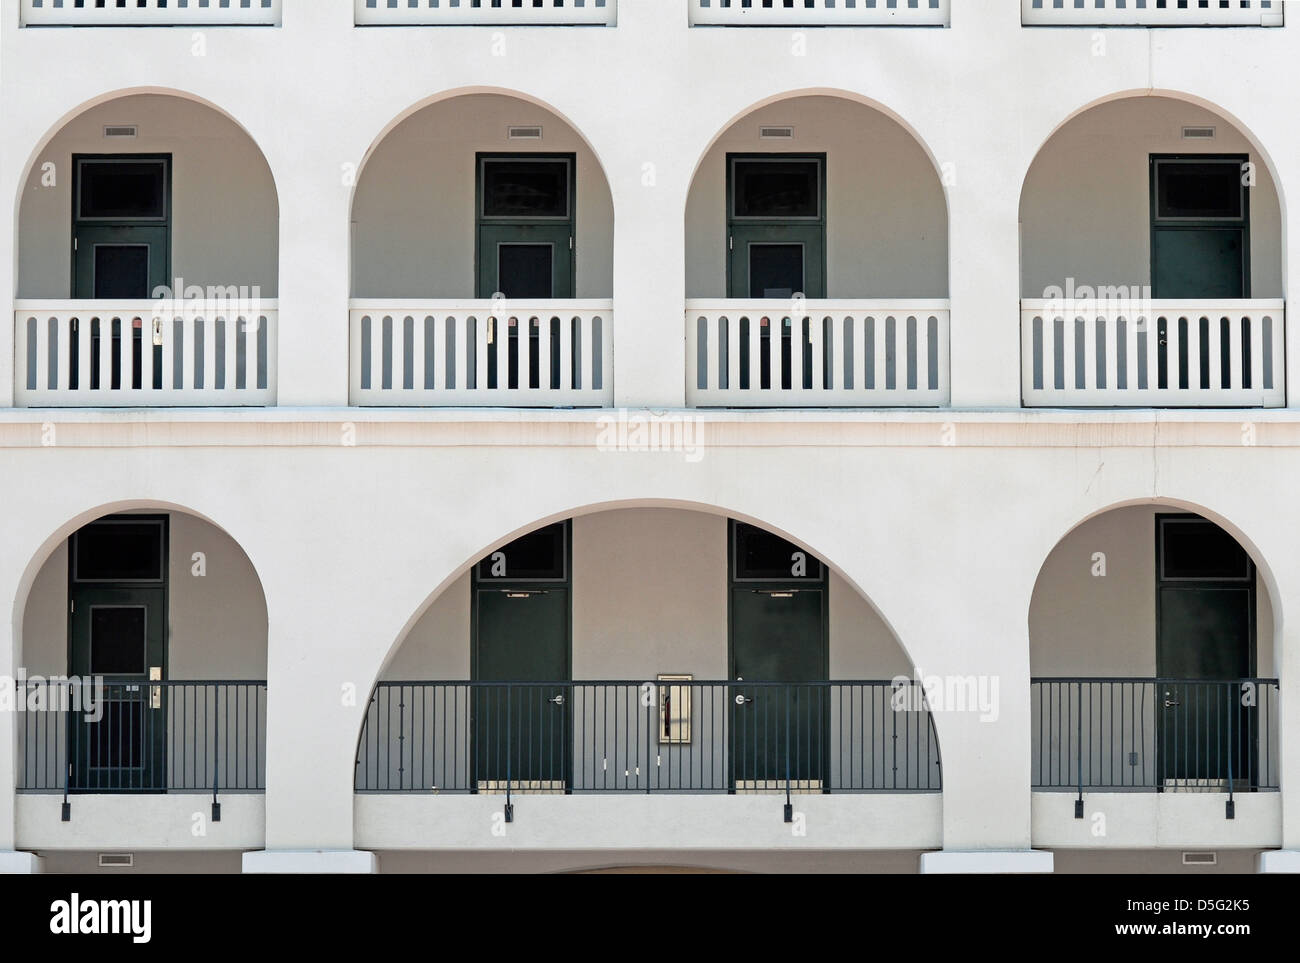 Vue de la caserne de cadets (dortoirs) à la Citadelle, le Collège militaire de Caroline du Sud, situé à Charleston, Caroline du Sud. Banque D'Images